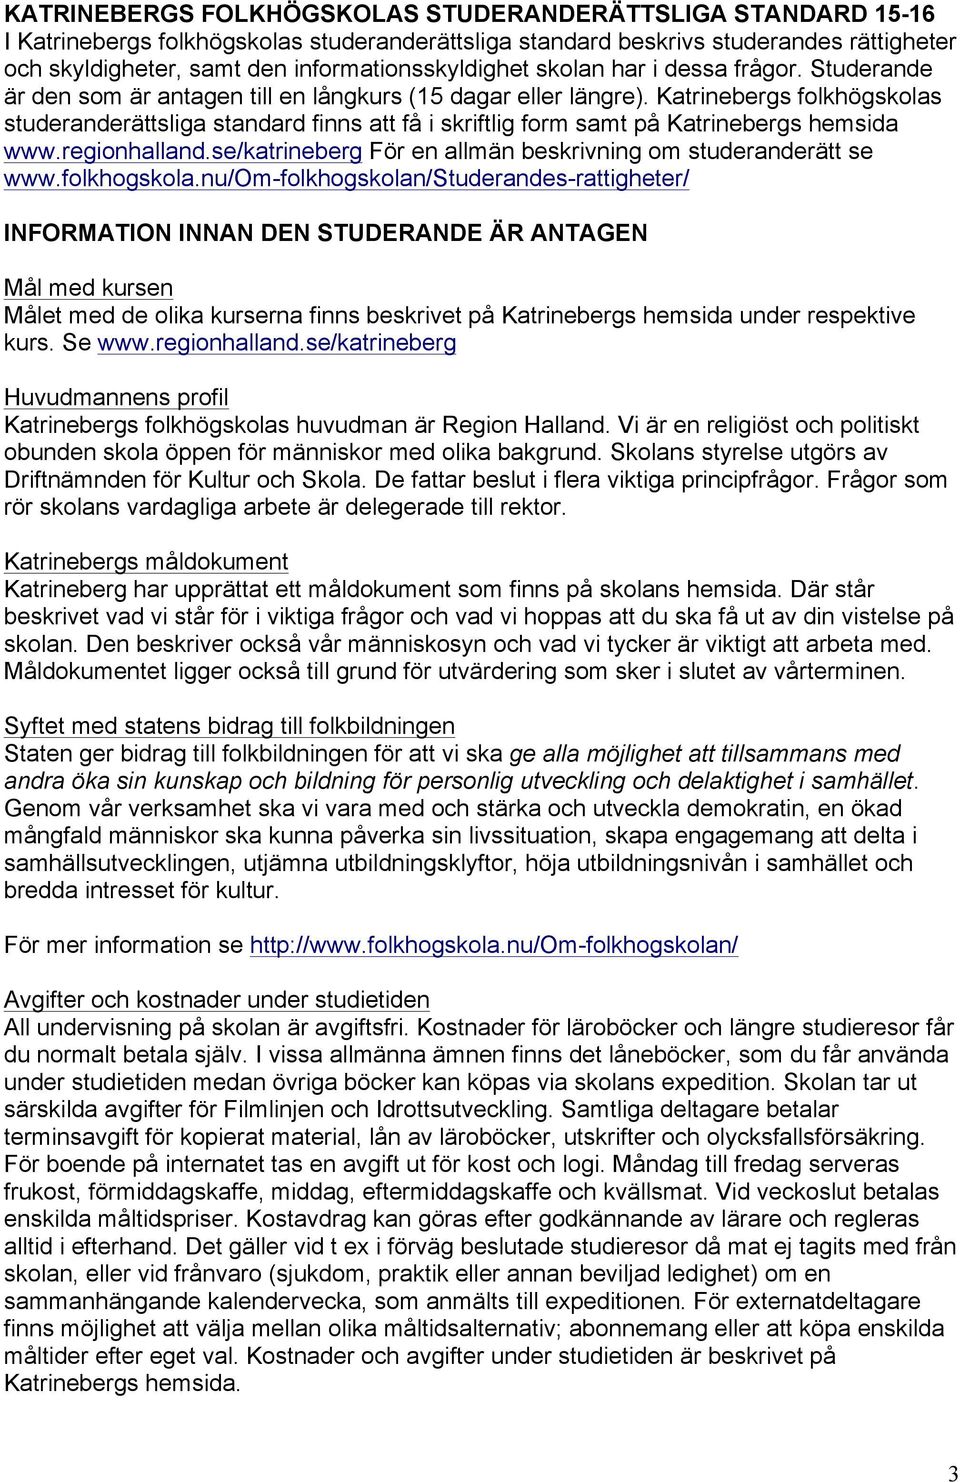 Katrinebergs folkhögskolas studeranderättsliga standard finns att få i skriftlig form samt på Katrinebergs hemsida www.regionhalland.se/katrineberg För en allmän beskrivning om studeranderätt se www.